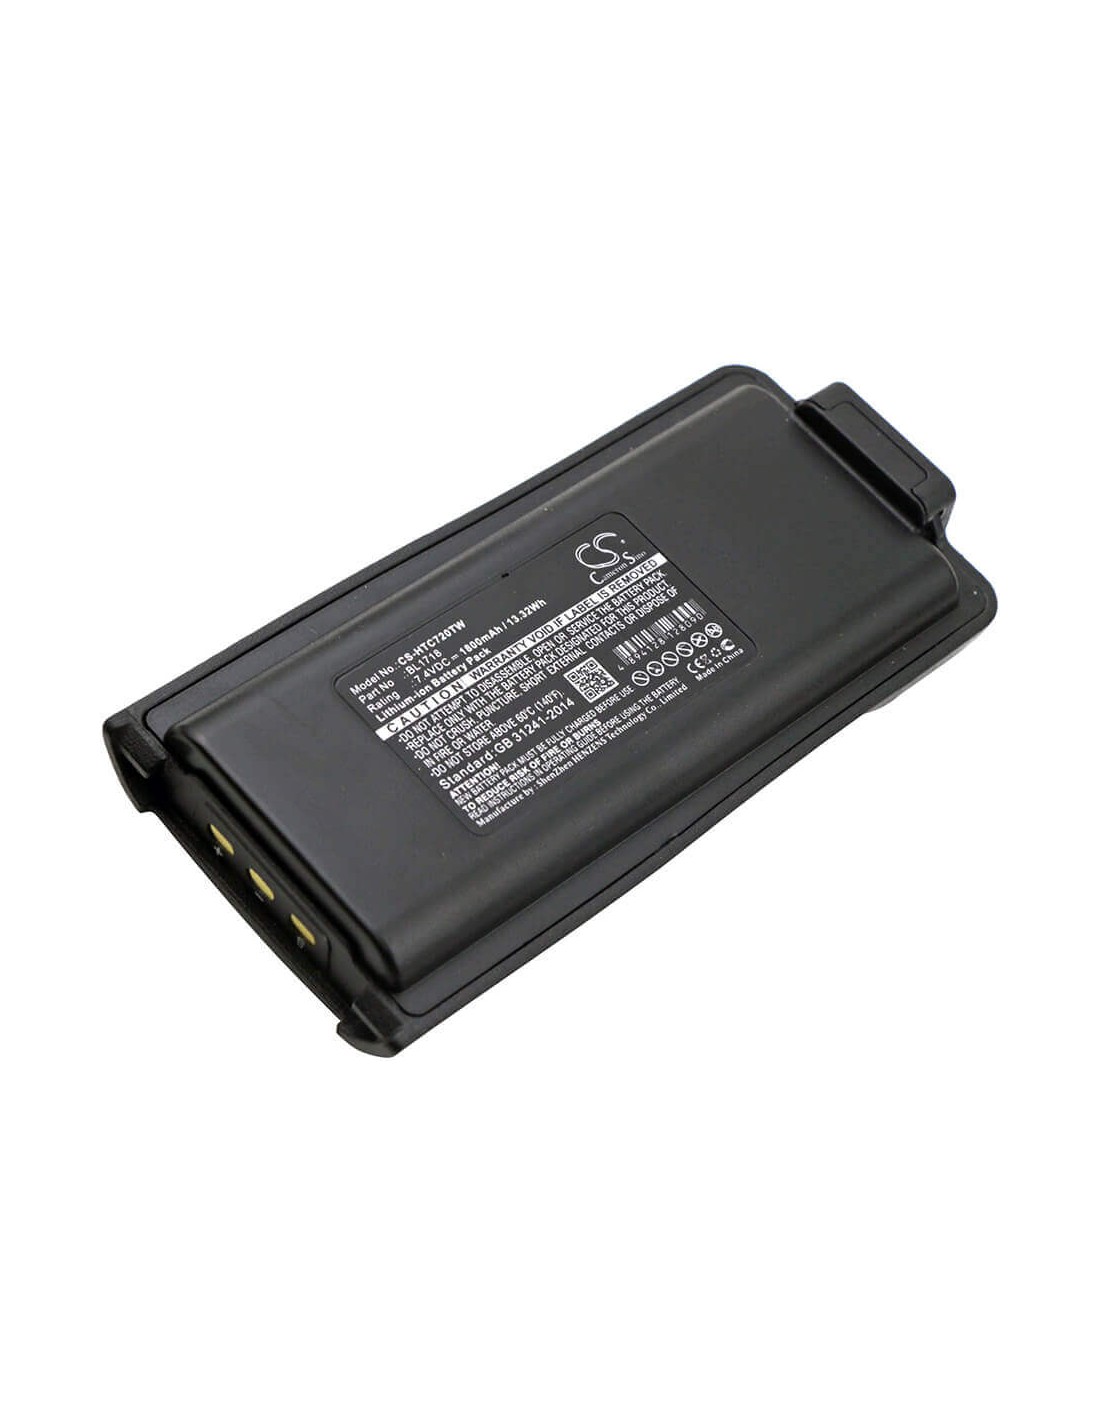 Battery for Hyt Tc3000g, Tc700g, Tc-720s 7.4V, 1800mAh - 13.32Wh